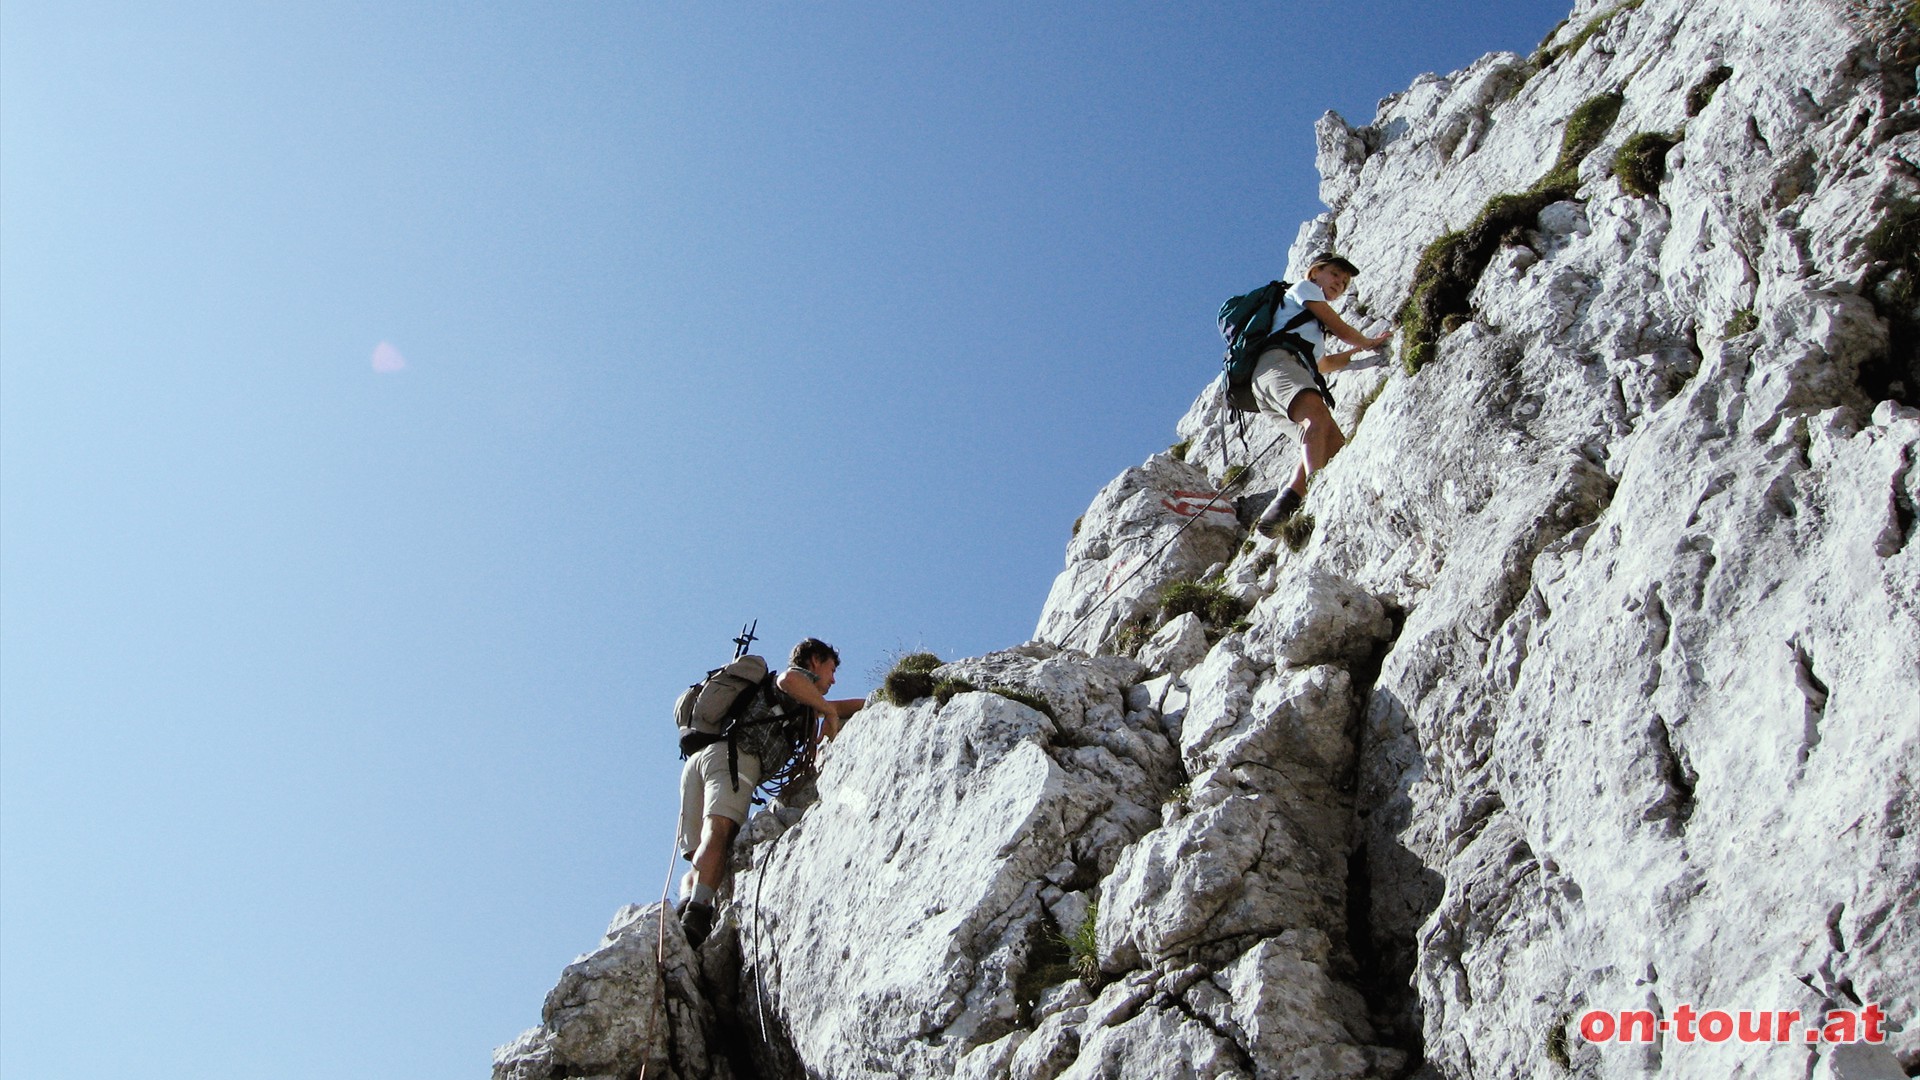 Der Josefinensteig ist gut versichert. Eine Klettersteigsicherung bietet zusätzliche Sicherheit.